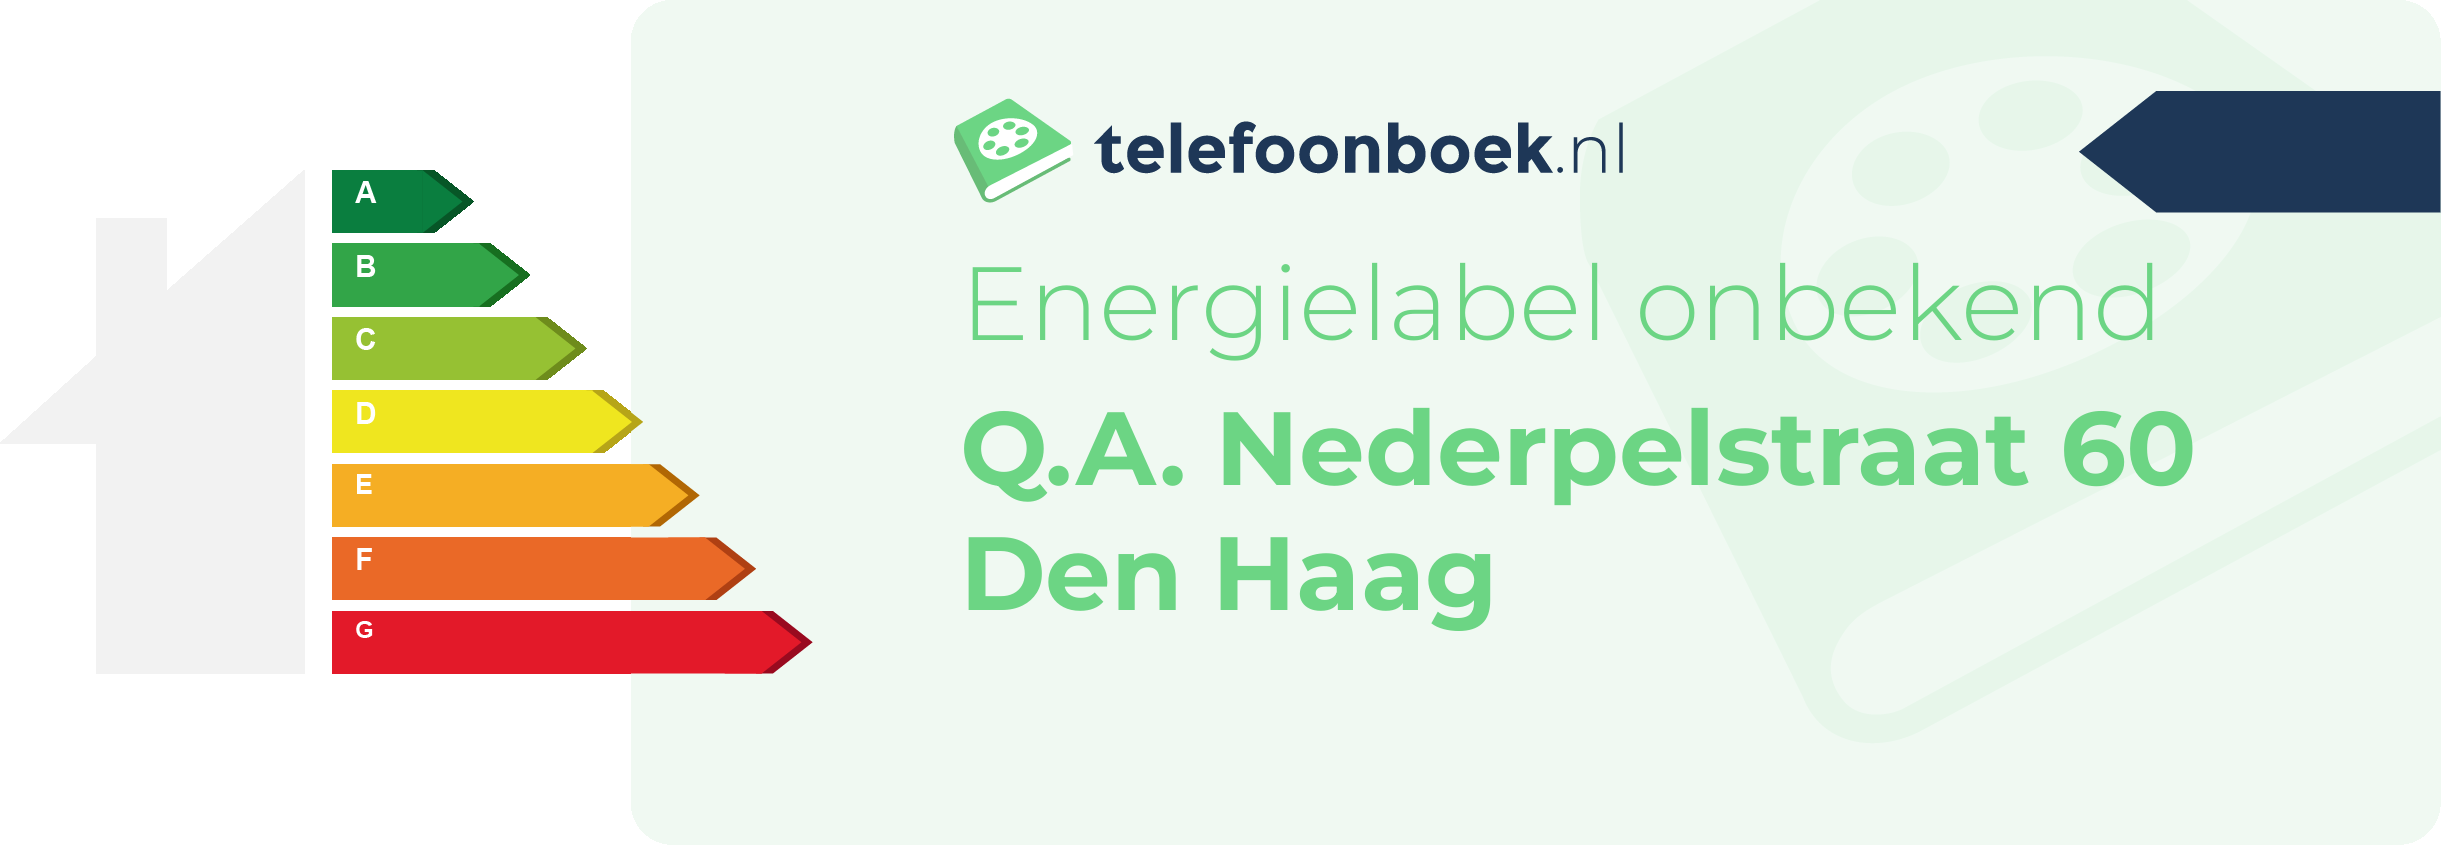 Energielabel Q.A. Nederpelstraat 60 Den Haag